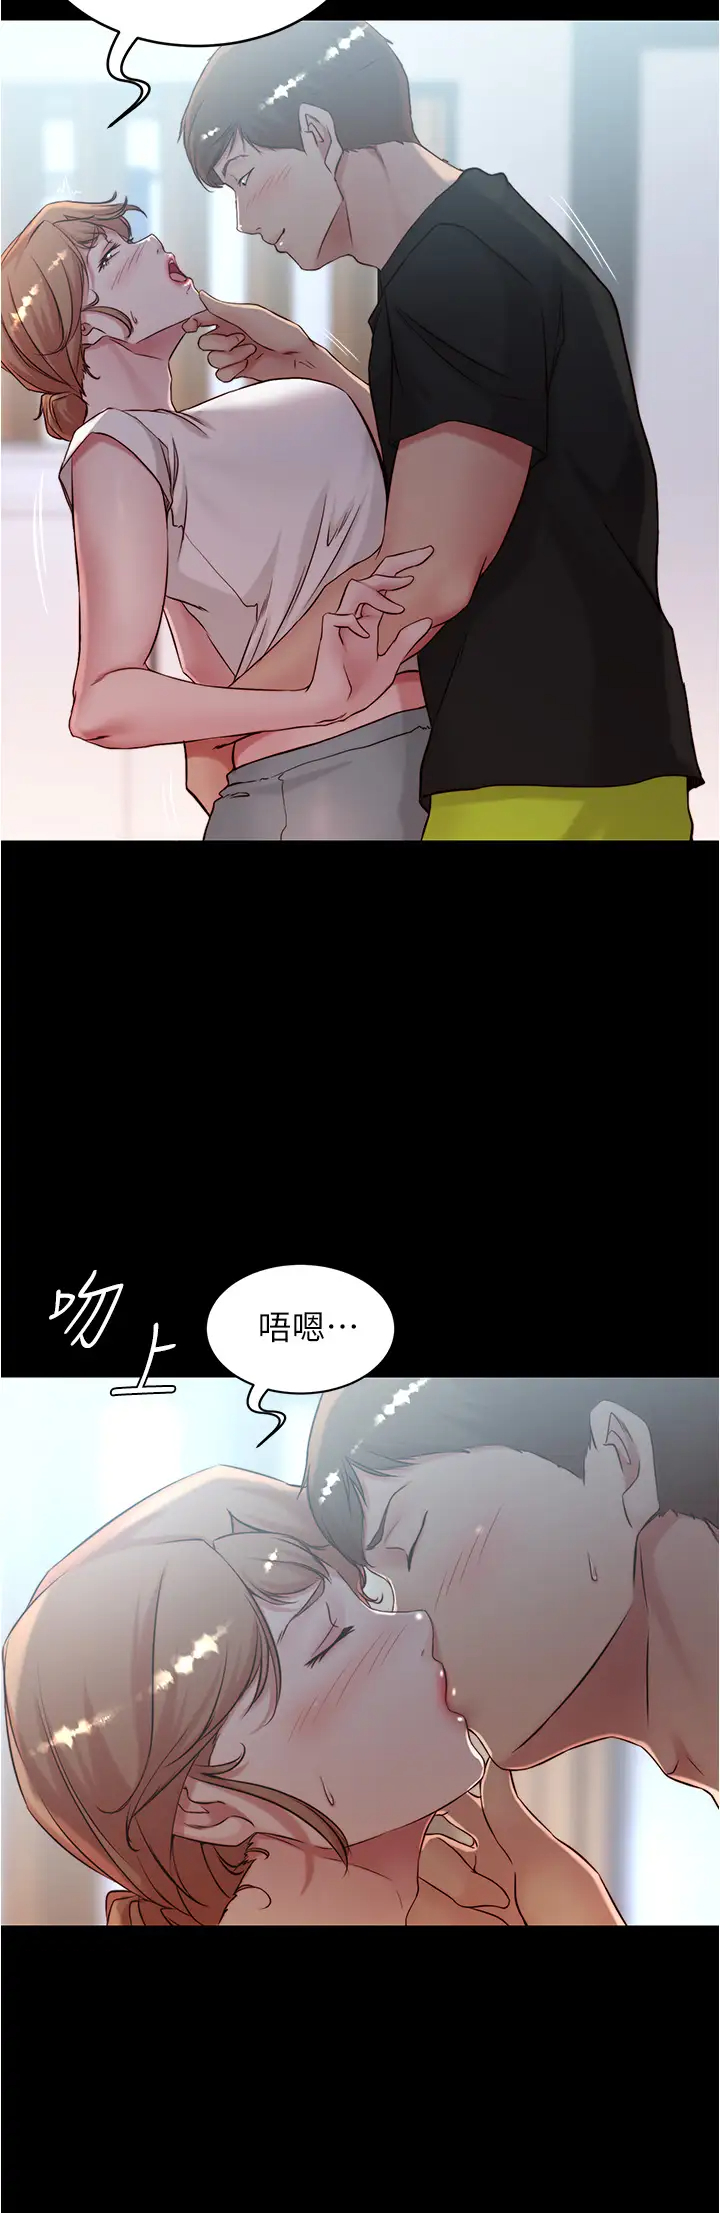 韩国污漫画 小褲褲筆記 第37话 开始跟张穗桦同居 2